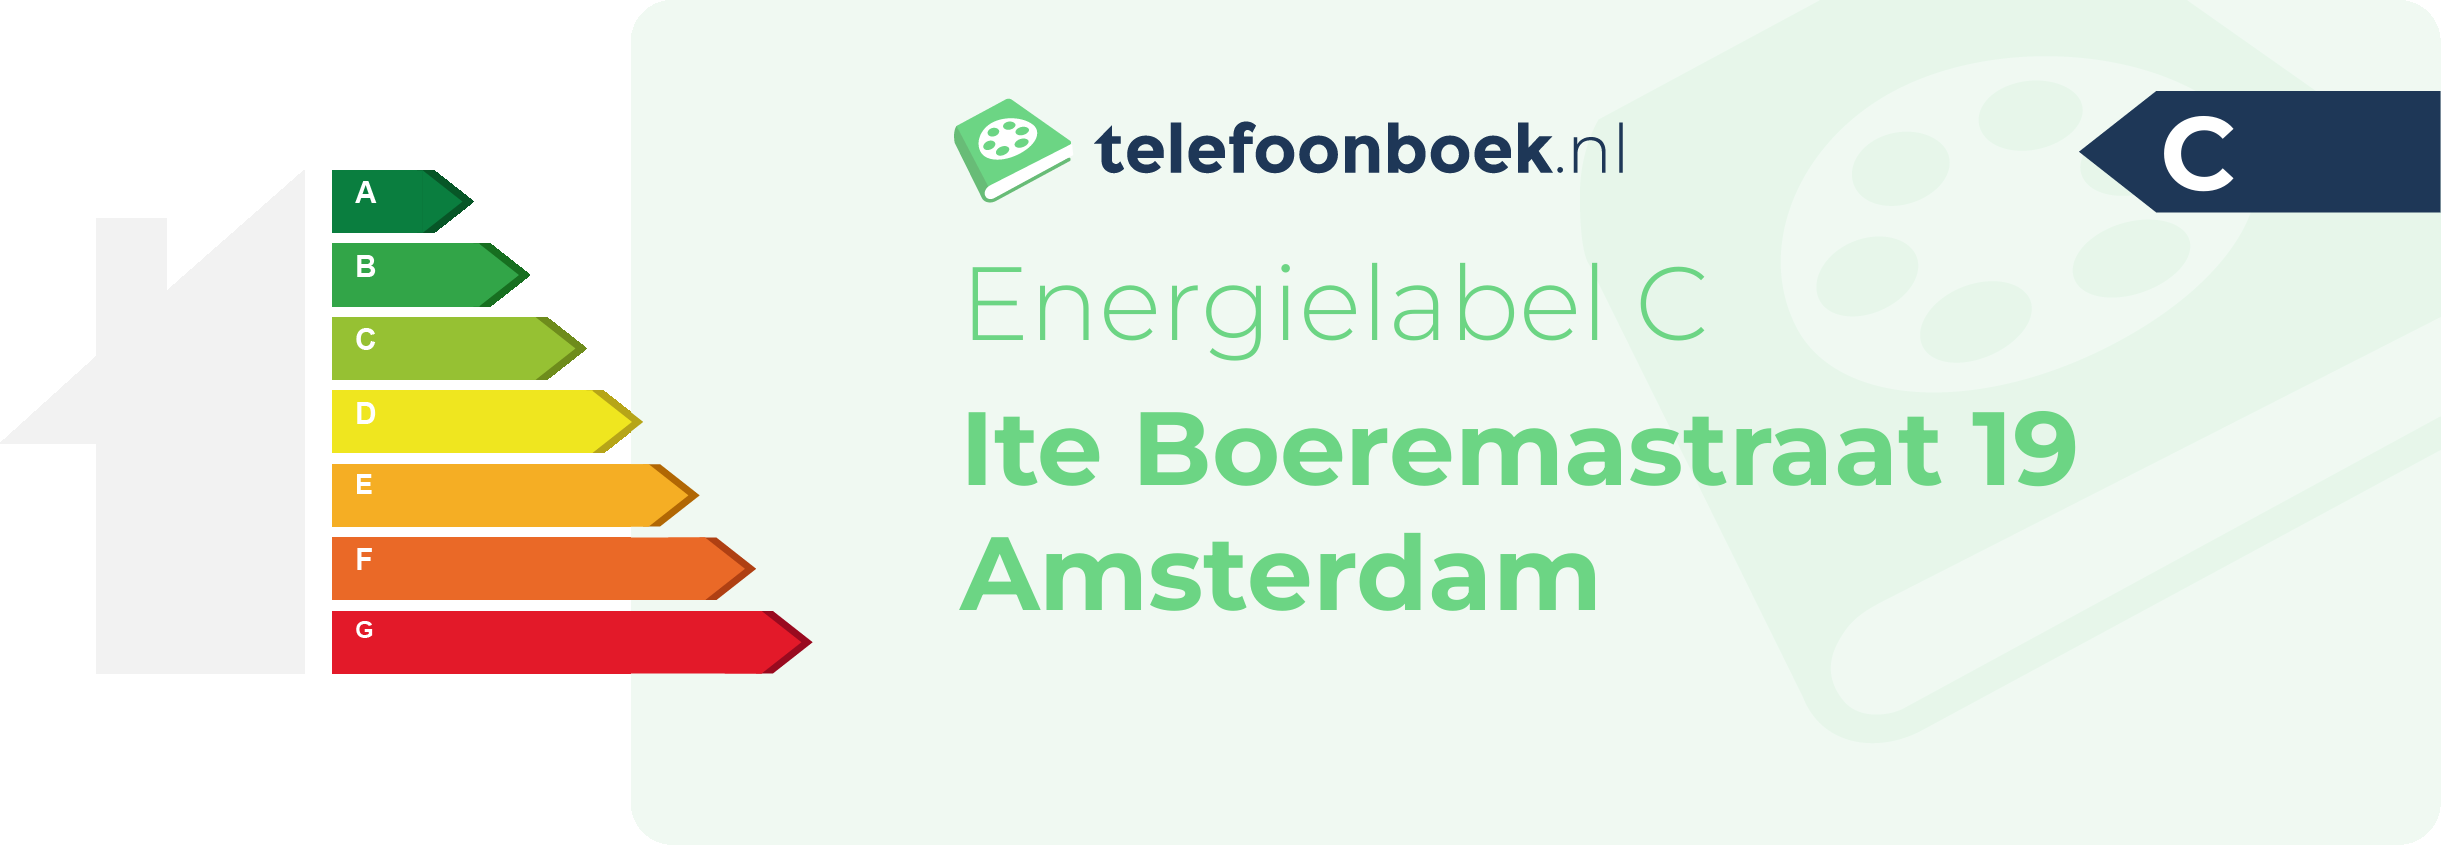 Energielabel Ite Boeremastraat 19 Amsterdam